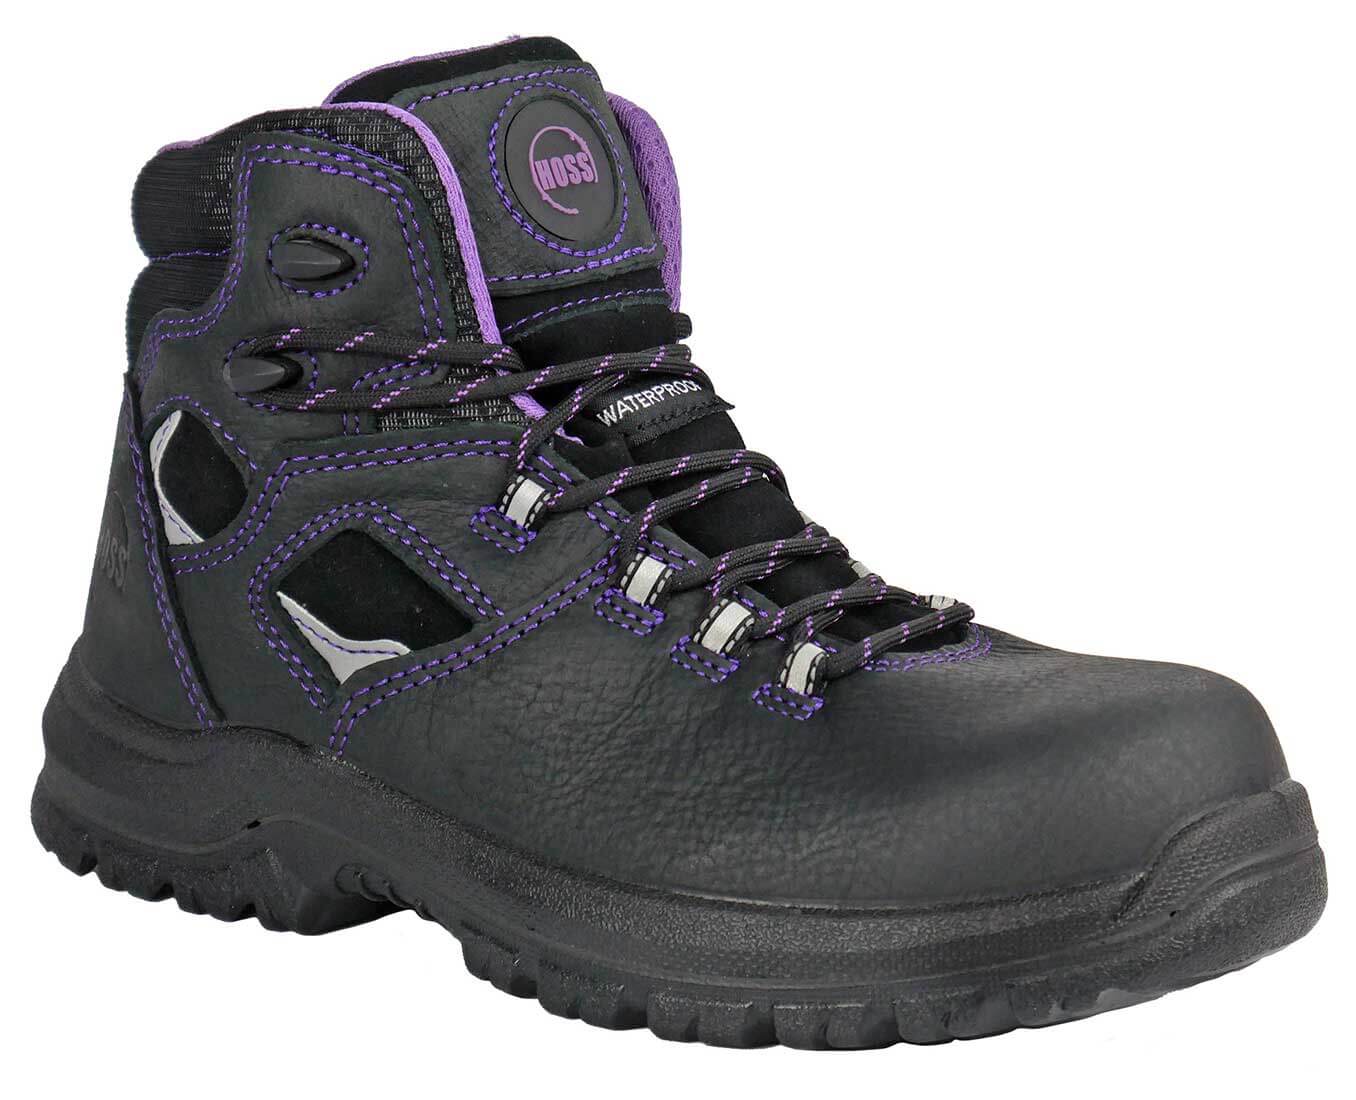 Hoss Boots 70120 Lacy Women's 6 Waterproof Composite Toe Slip Resistant Work Boot